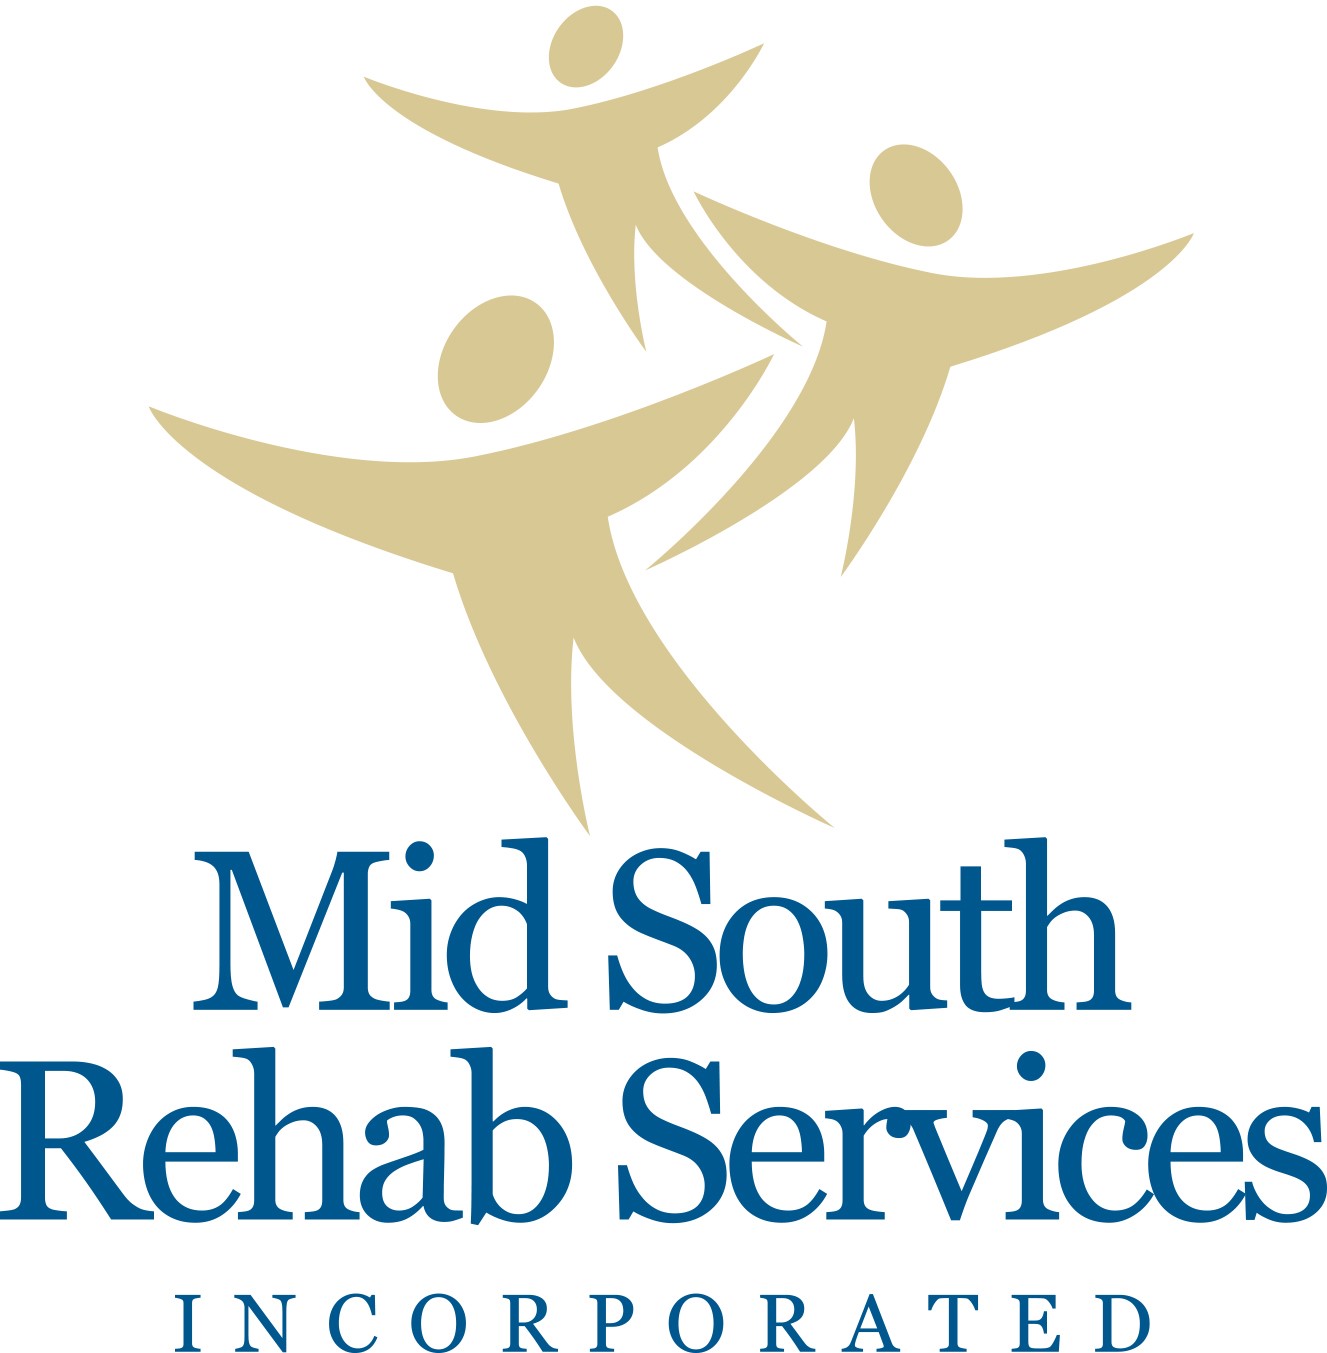 Servicios de rehabilitación de Mid South (Nivel 2)